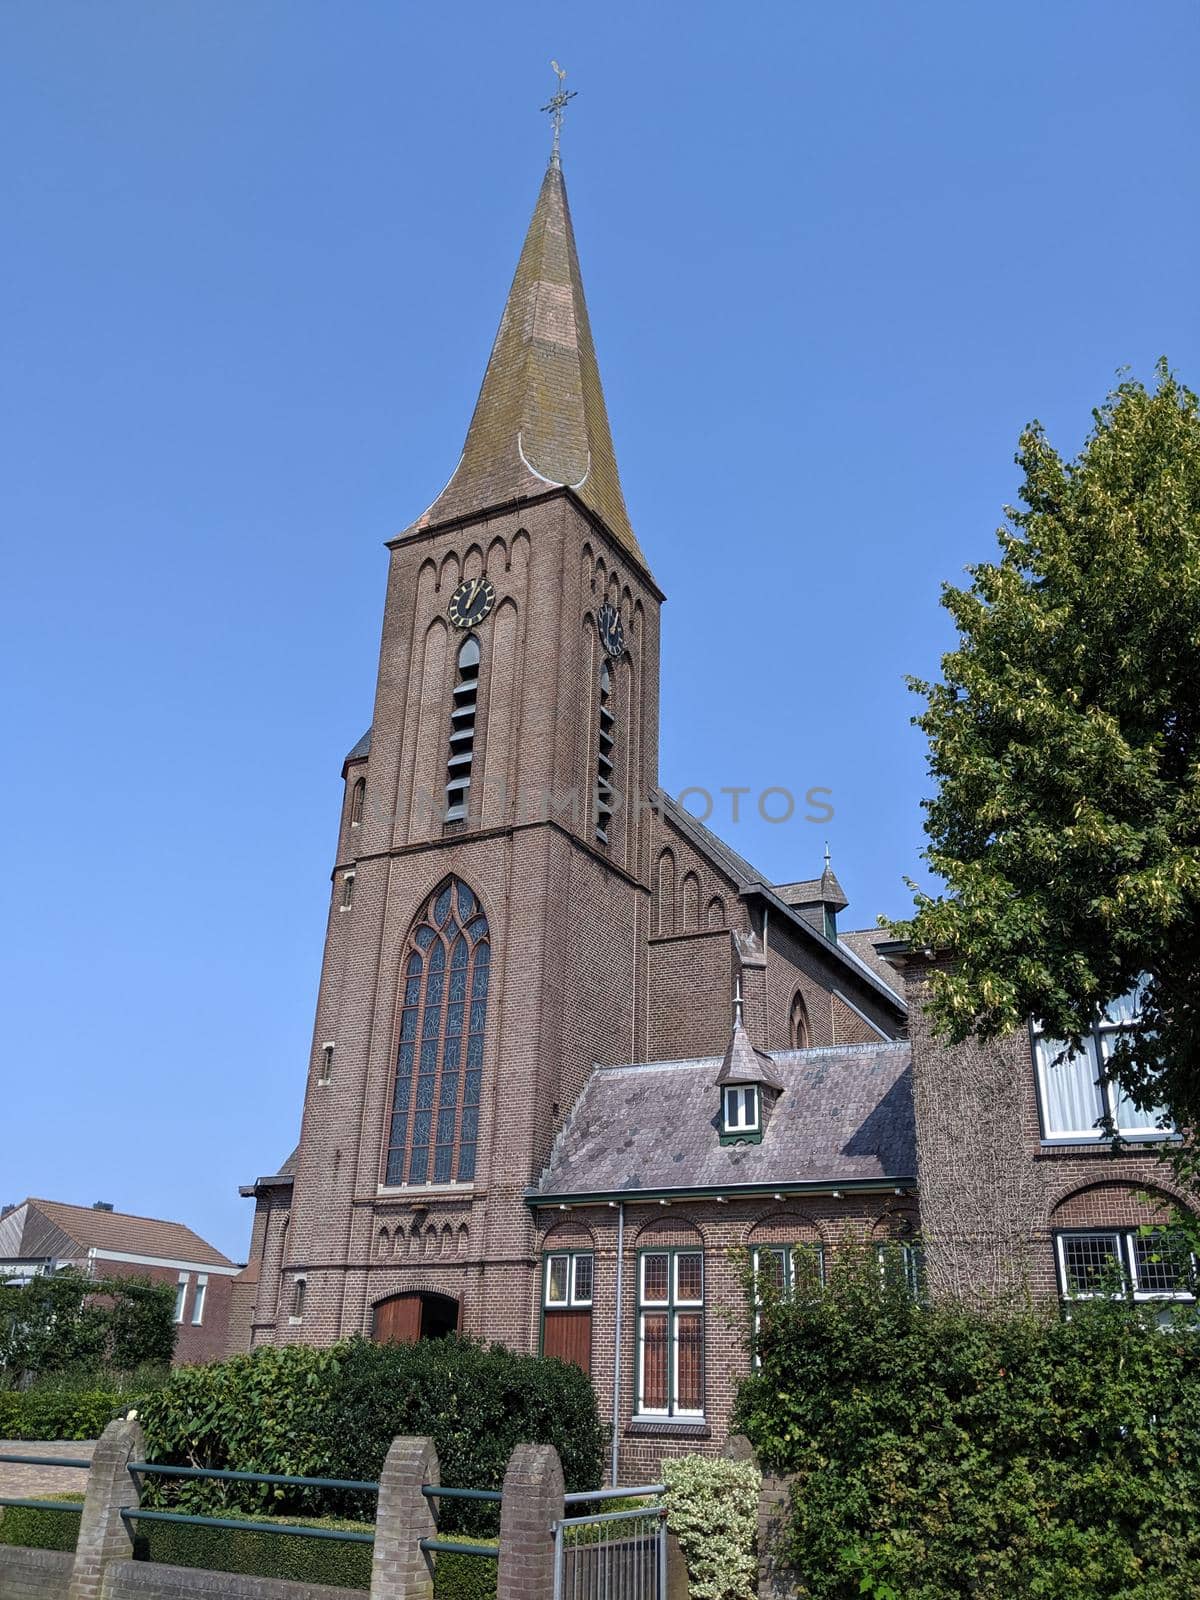 Marcellinus church in Broekland, Overijssel The Netherlands